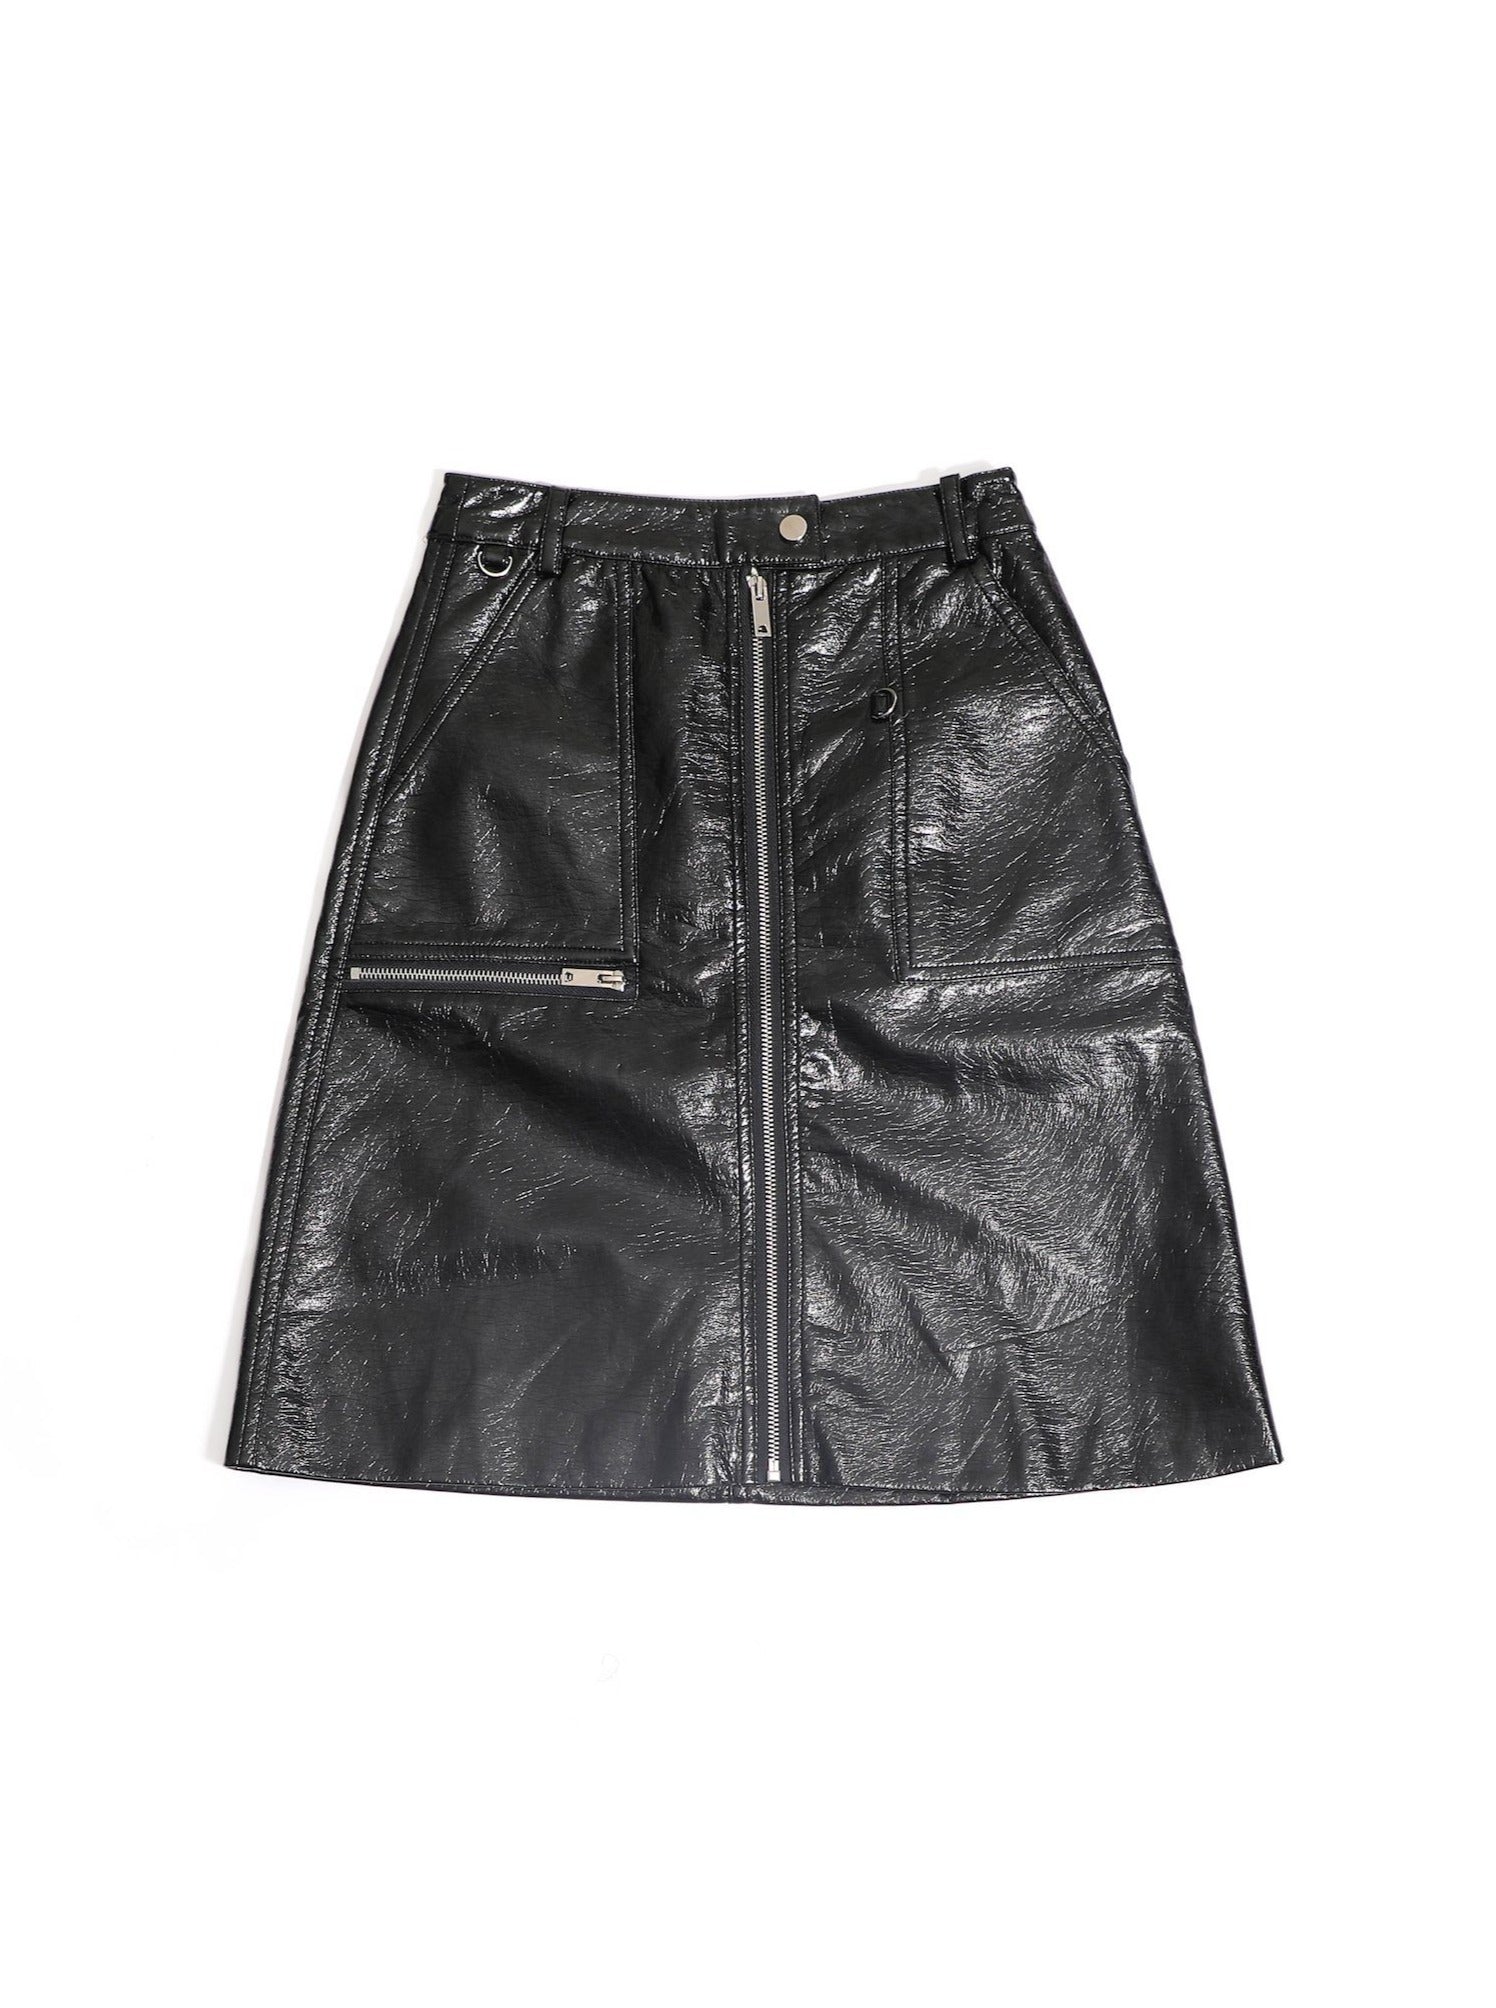 Shop Online Women's Bordeaux Faux Leather Zip Up Pencil Skirt | MUSE ...